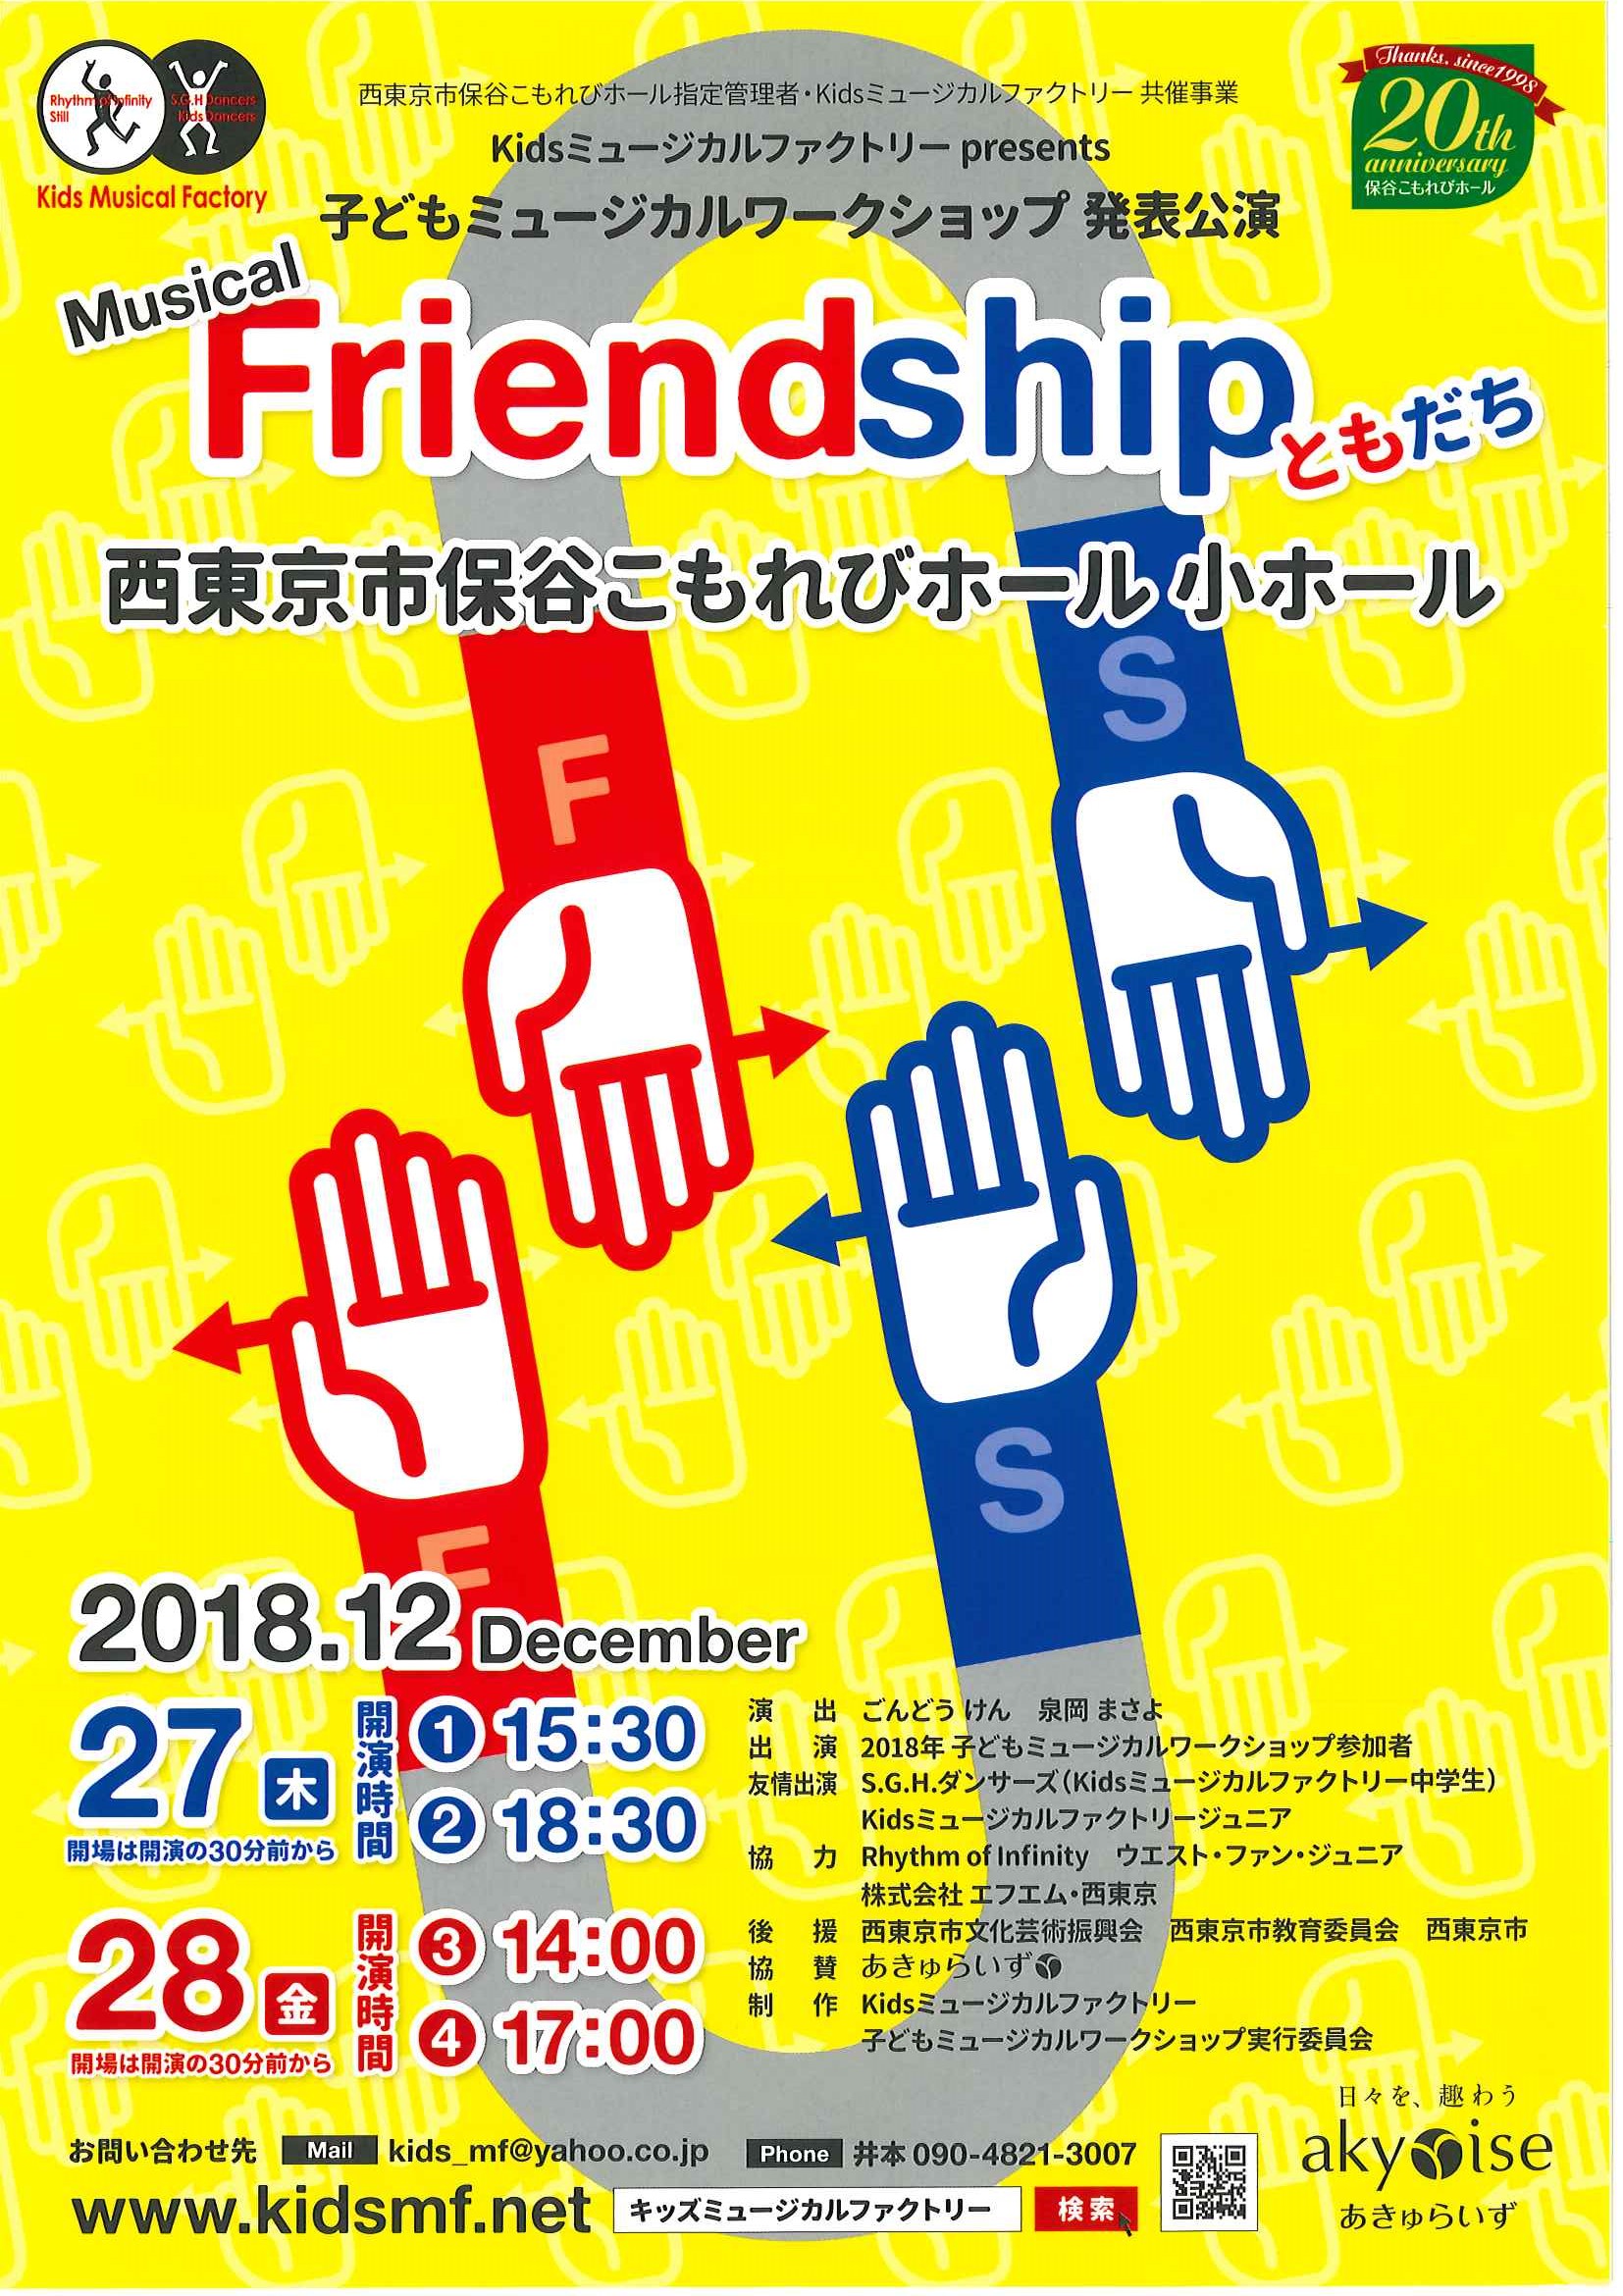 http://842fm.west-tokyo.co.jp/fm842/images/181201%2808%29_friendship_omote.jpg